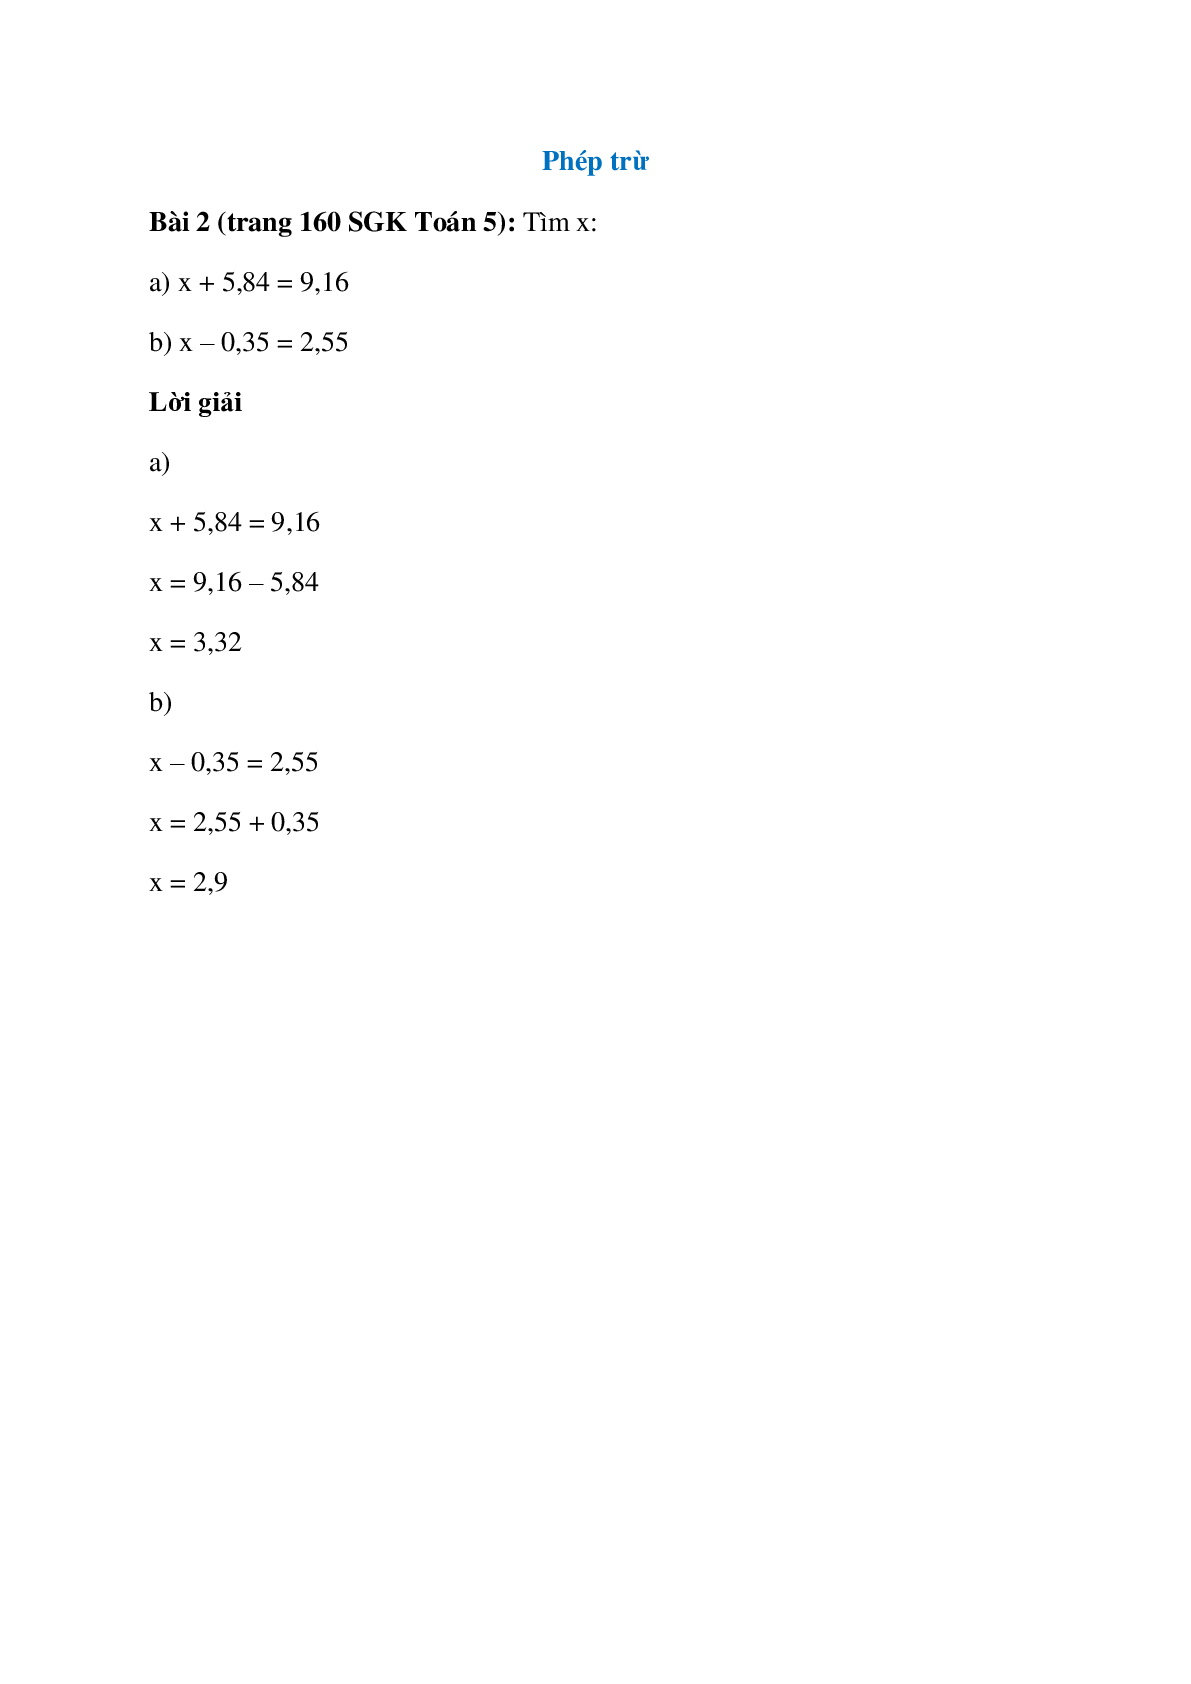 Tìm x: x + 5,84 = 9,16 (trang 1)